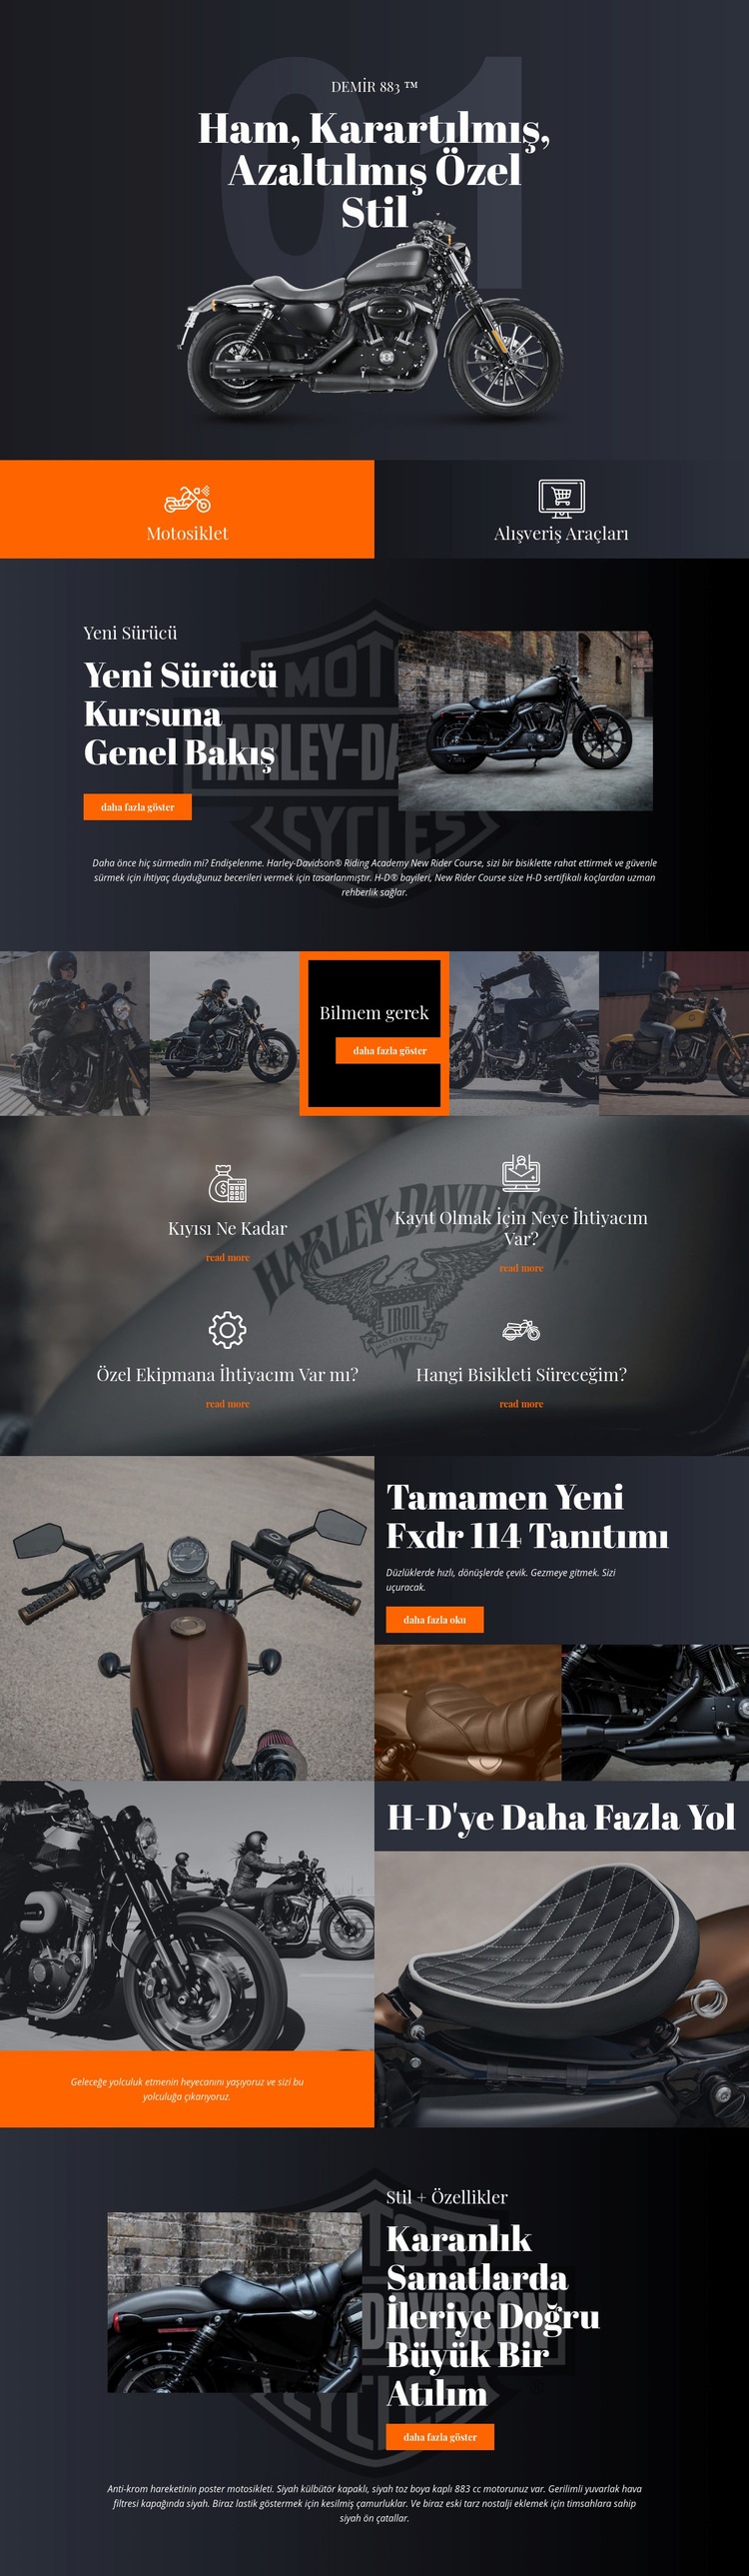 Harley Davidson Açılış sayfası